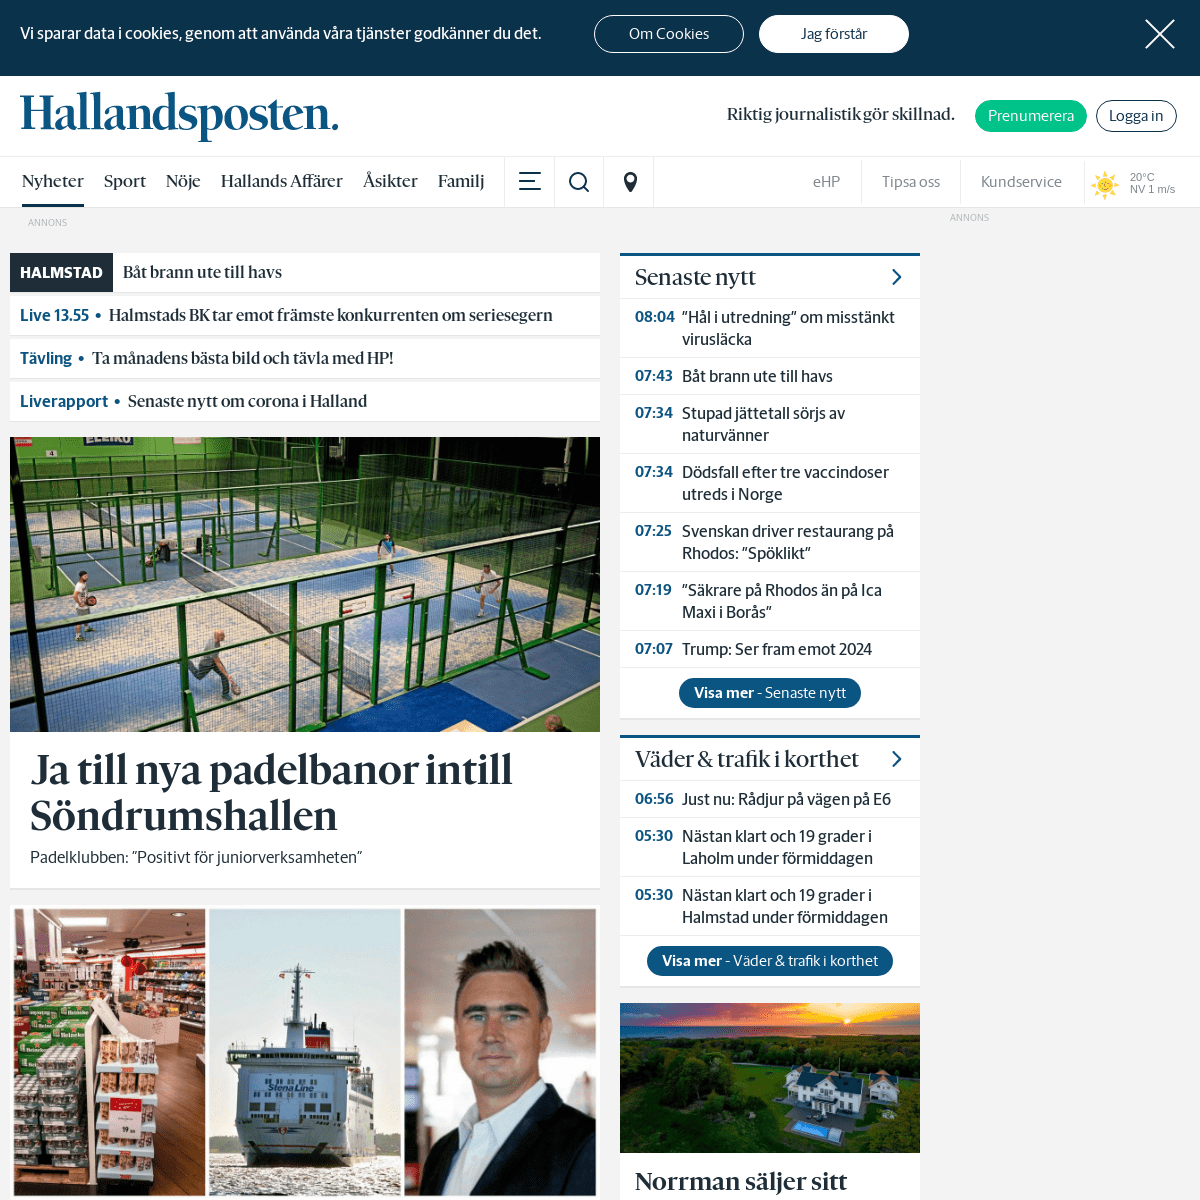 A complete backup of https://hallandsposten.se